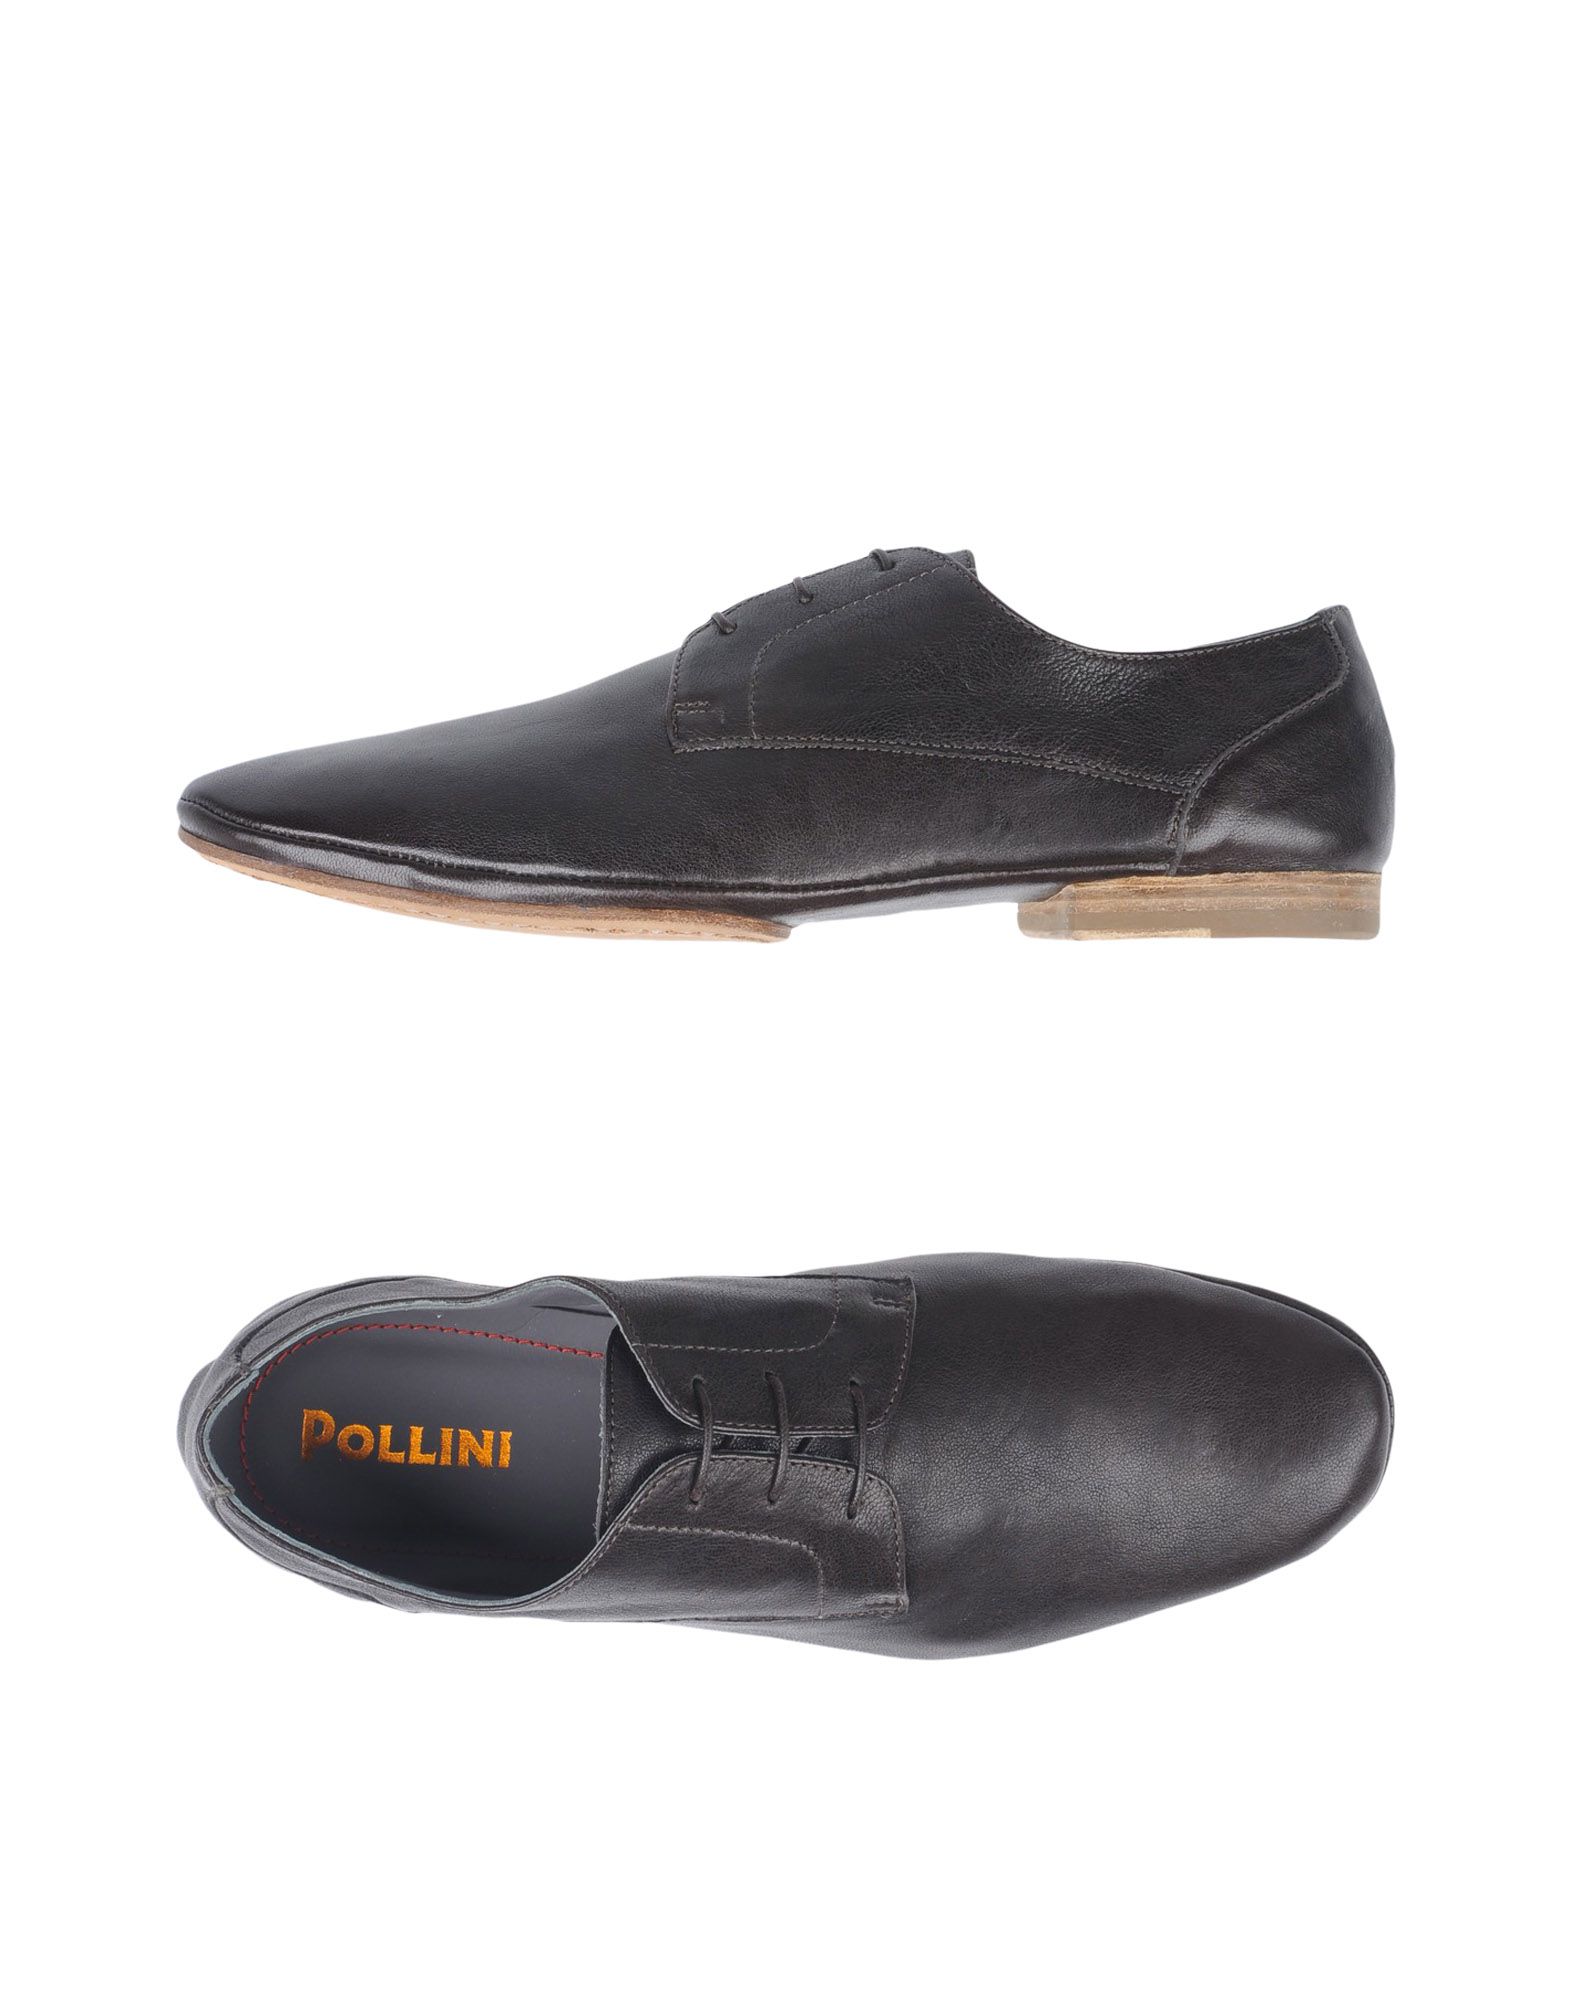 pollini shoes online